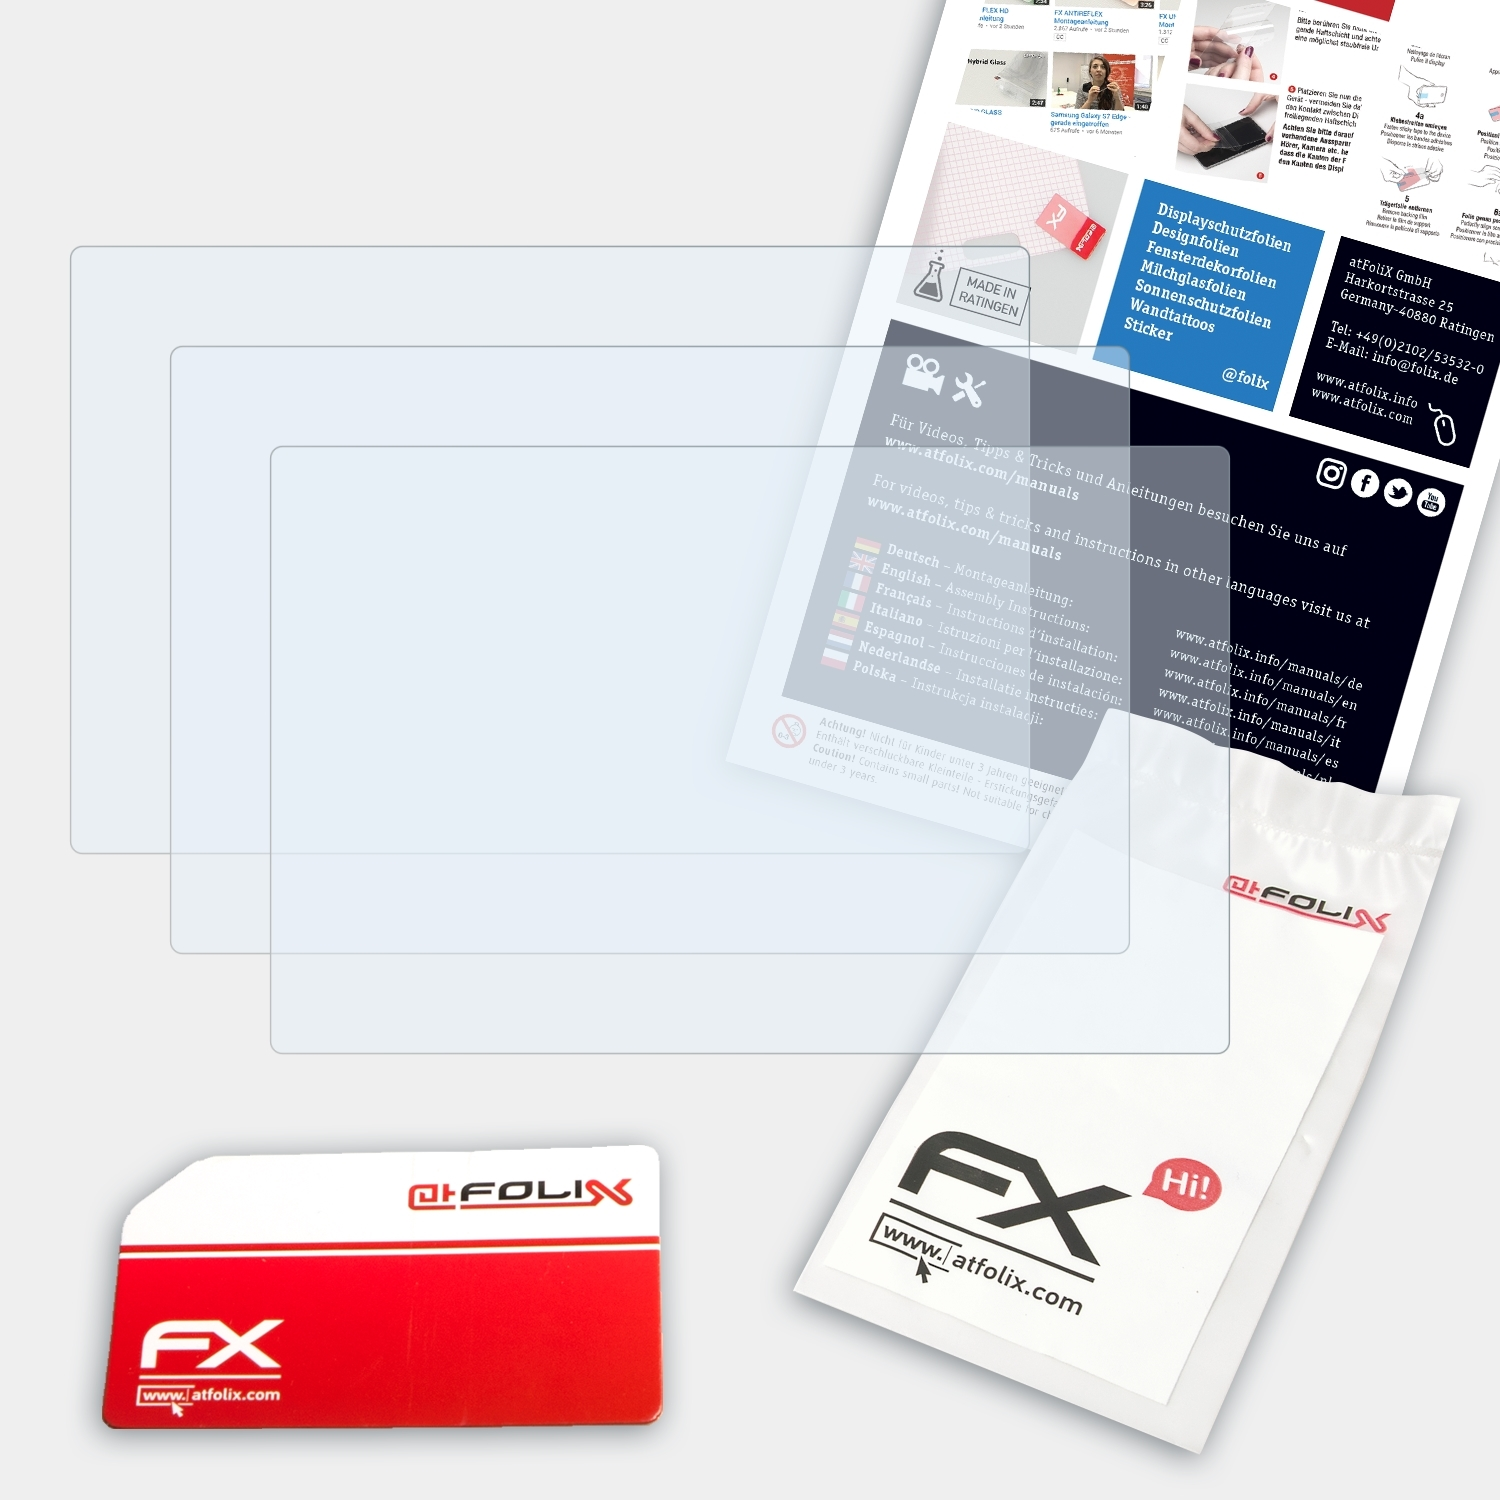 DMC-LF1) FX-Clear Panasonic Lumix ATFOLIX 3x Displayschutz(für